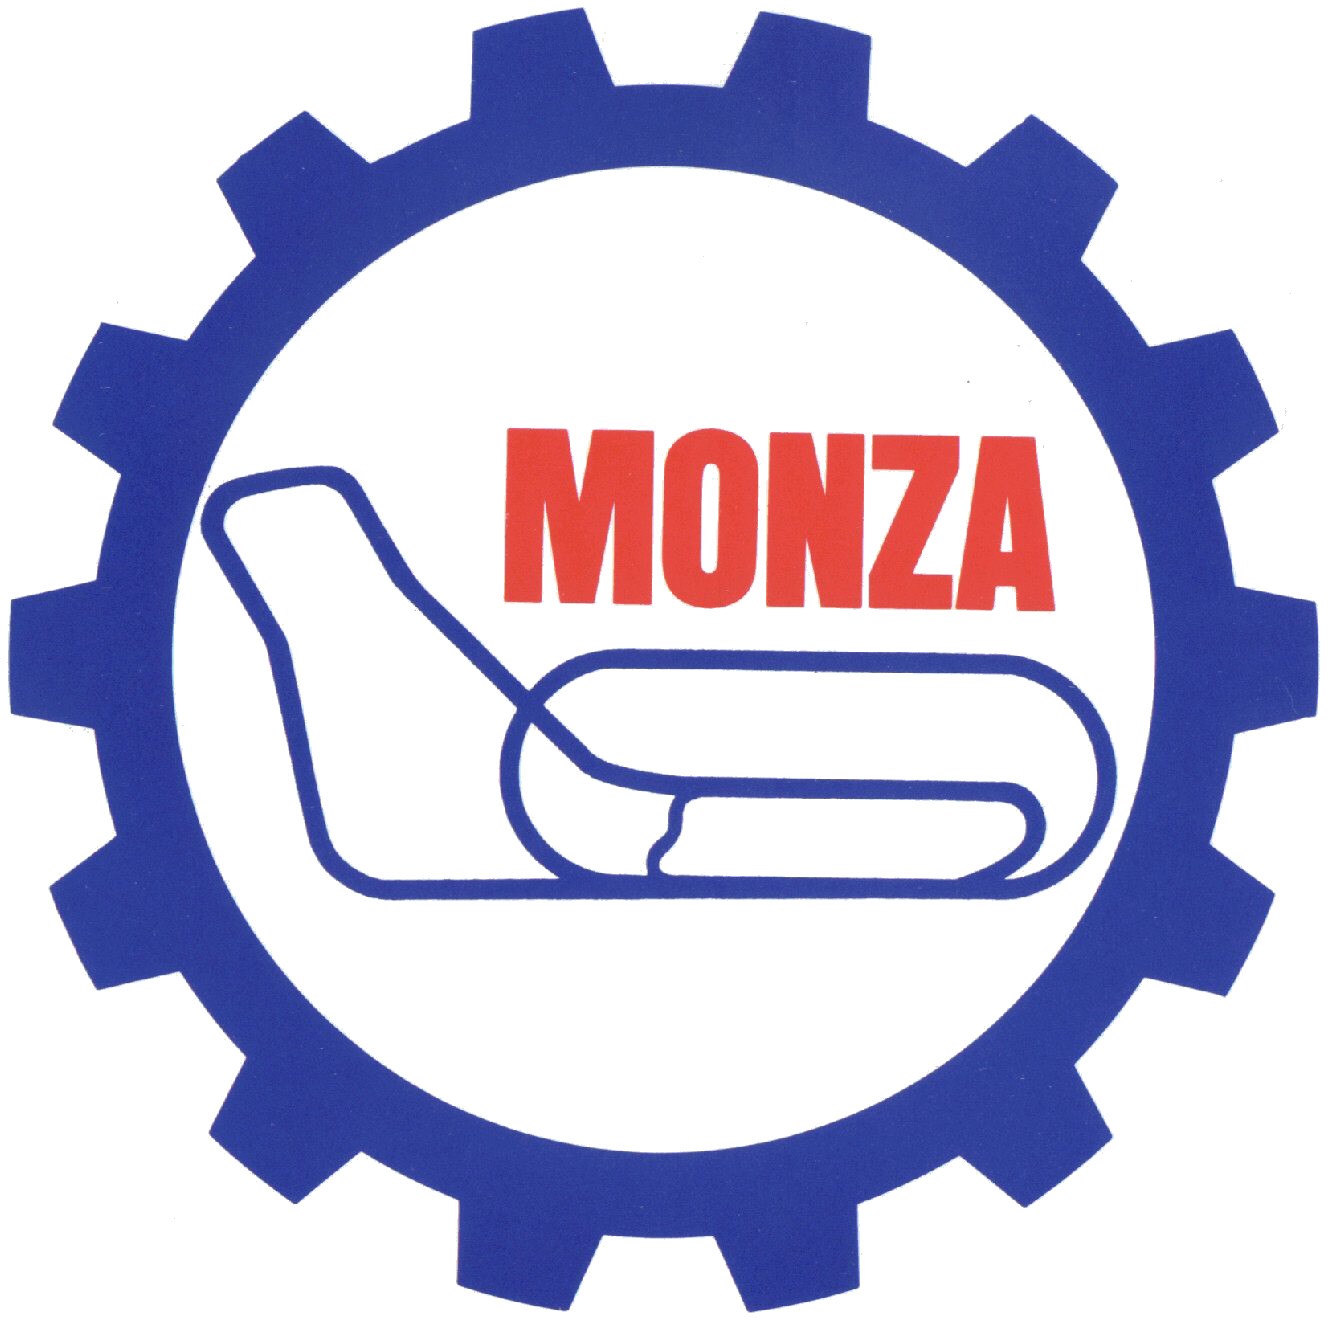 Comune di Monza